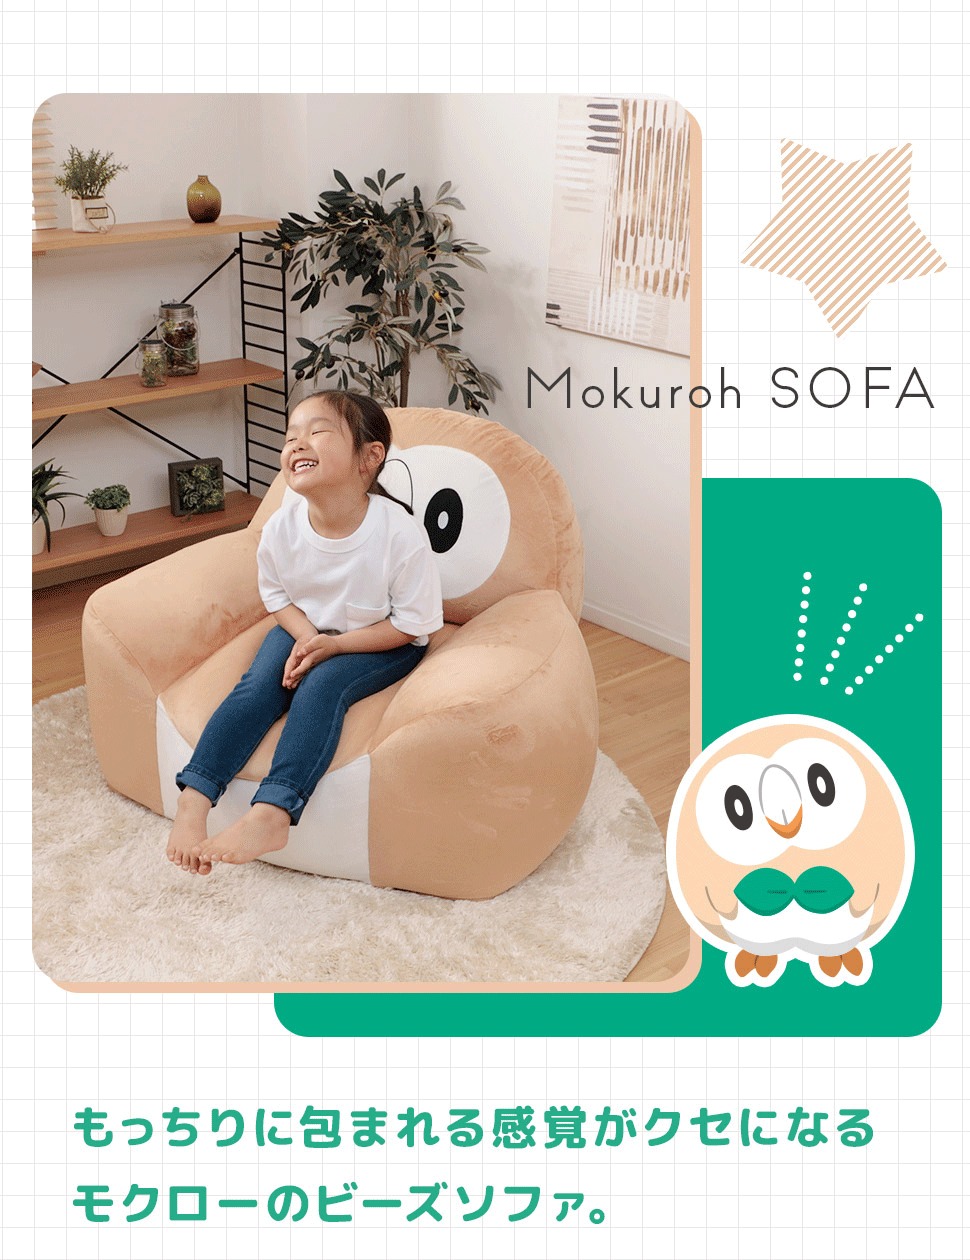 Pokémon: ¡Un sofa inspirado en Rowlet ha sido anunciado en Japón! 4